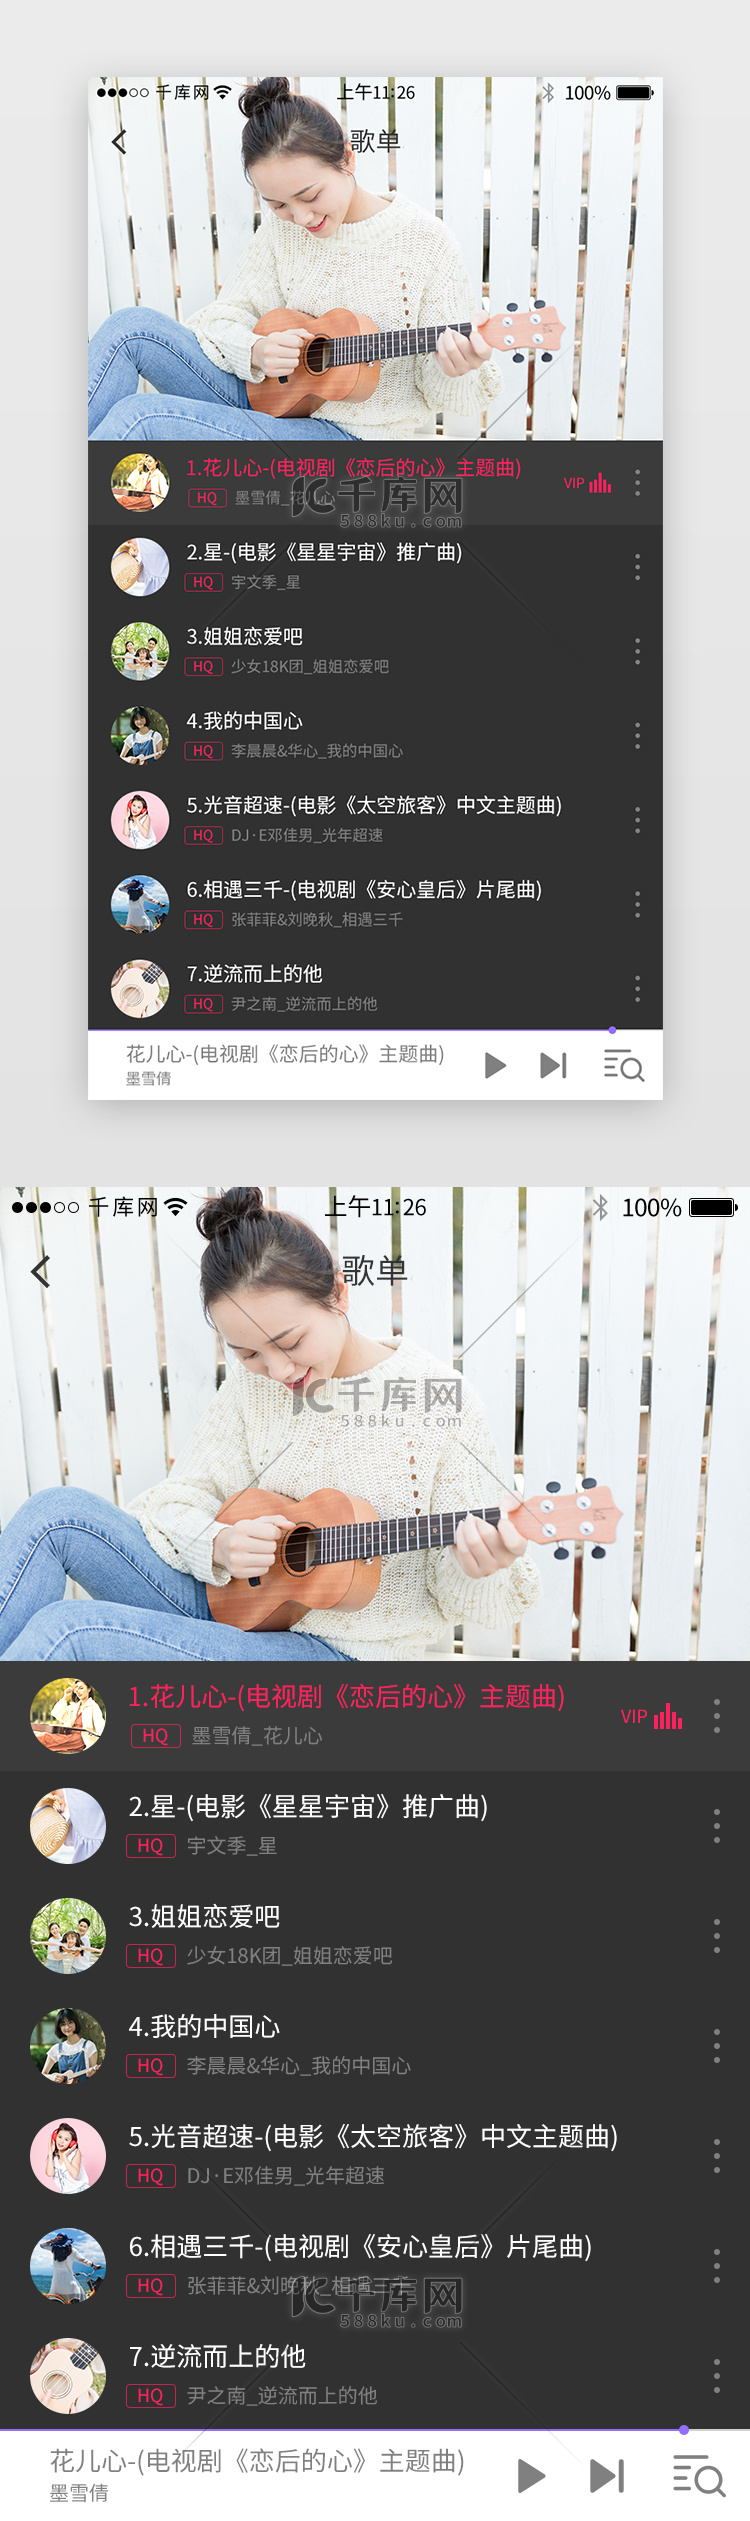 深色系音乐K歌app界面模板